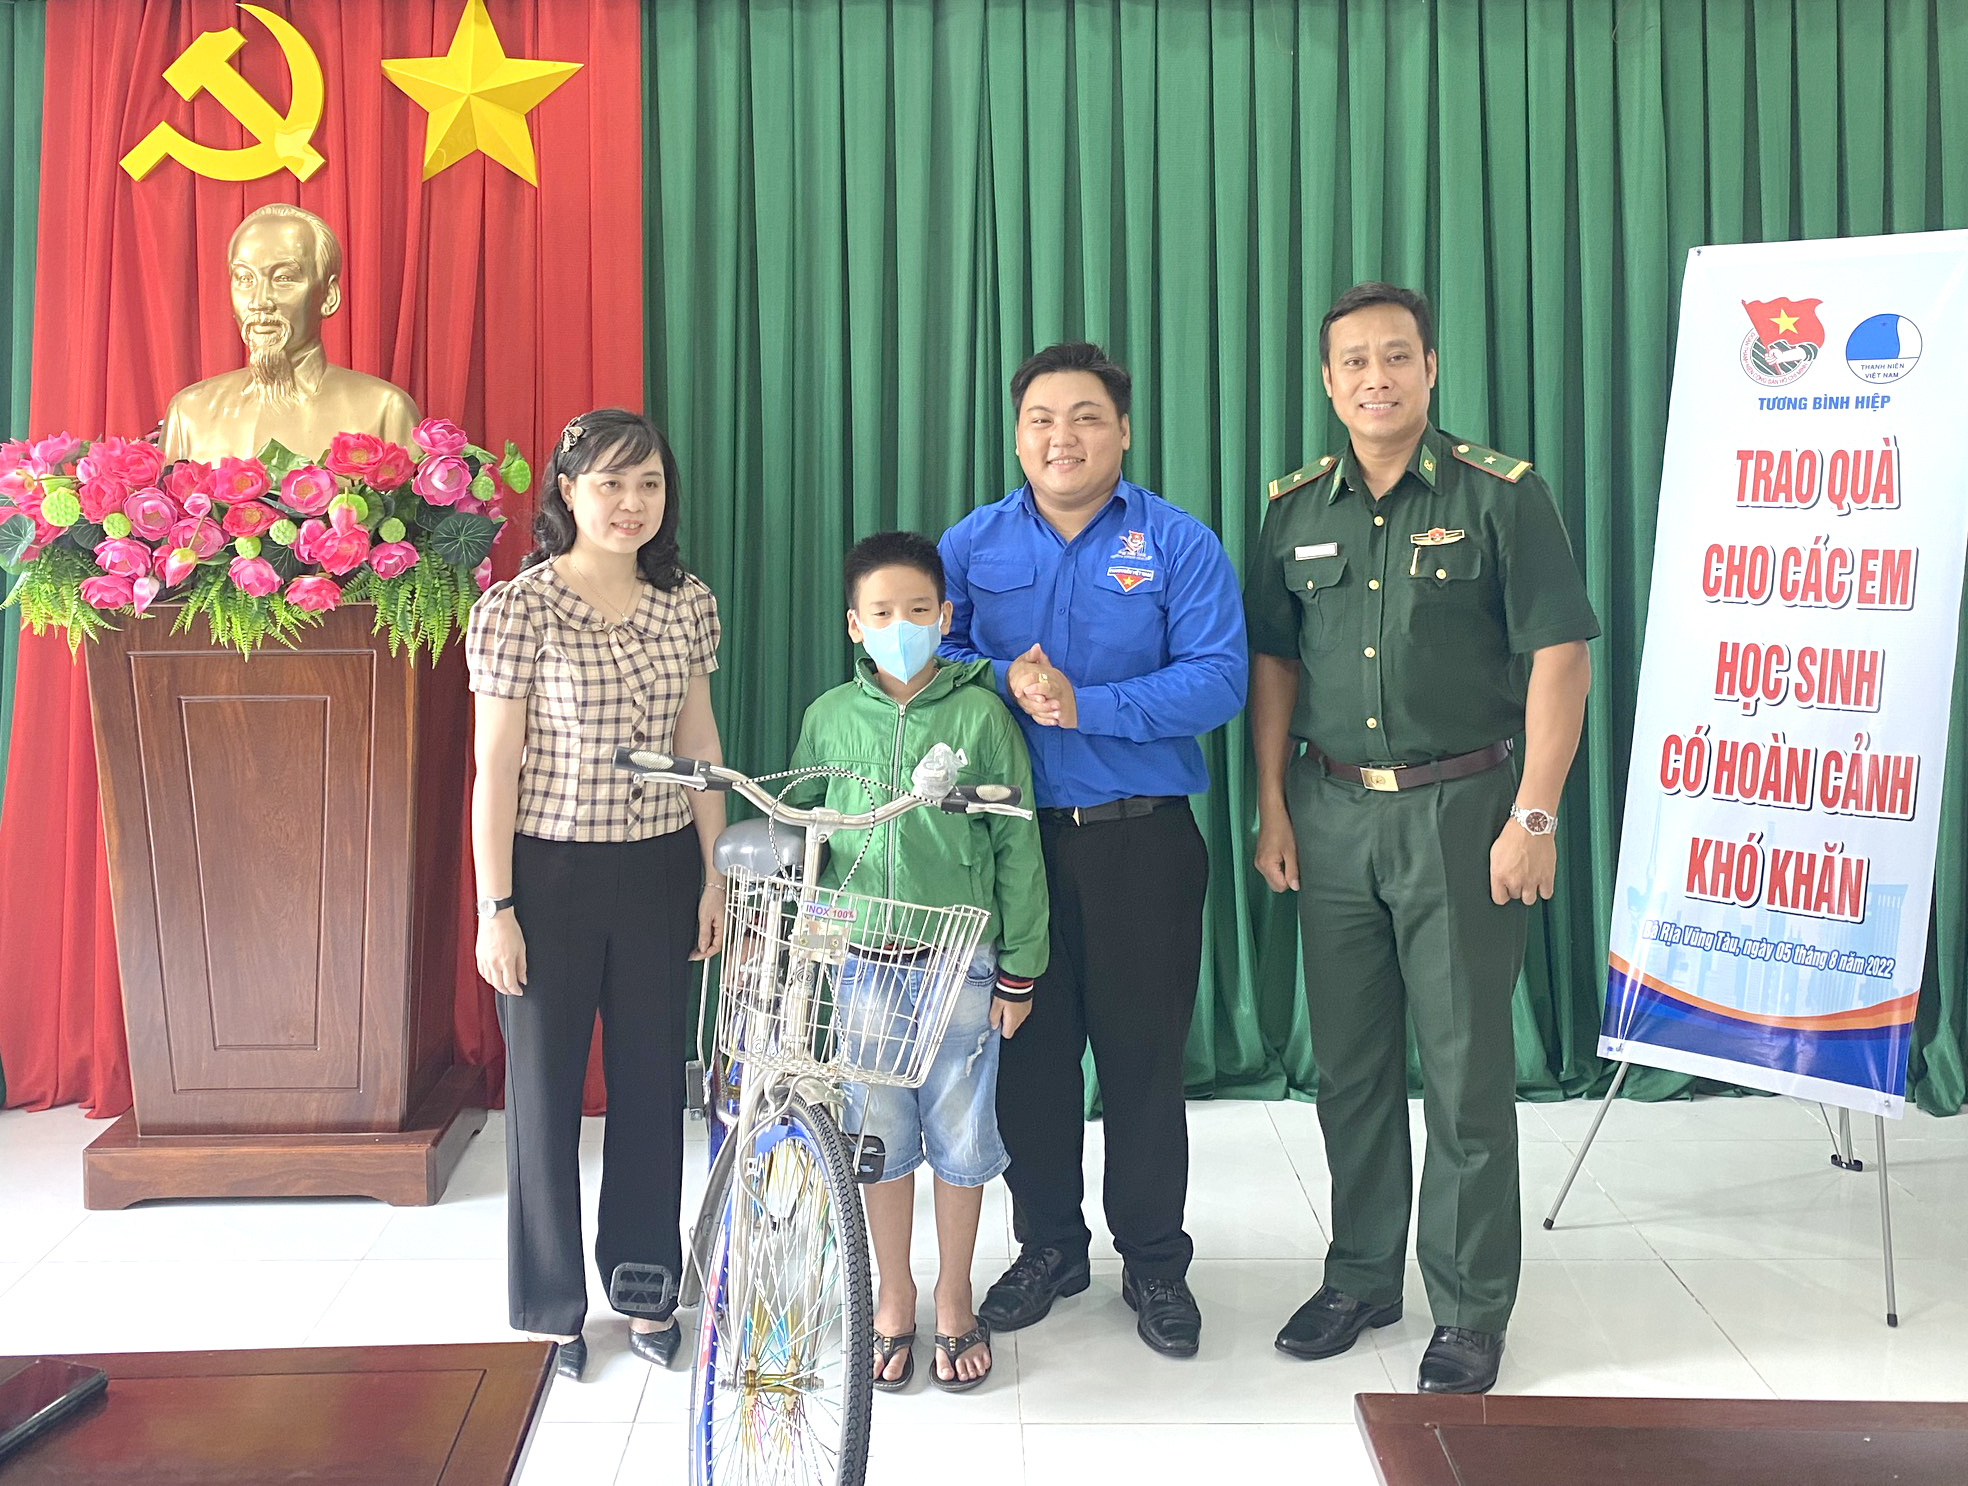 Đại diện Đồn Biên phòng Long Sơn và Đoàn thanh niên phường Tương Bình Hiệp tặng xe đạp trị giá 1 triệu đồng cho em Bùi Quốc An.